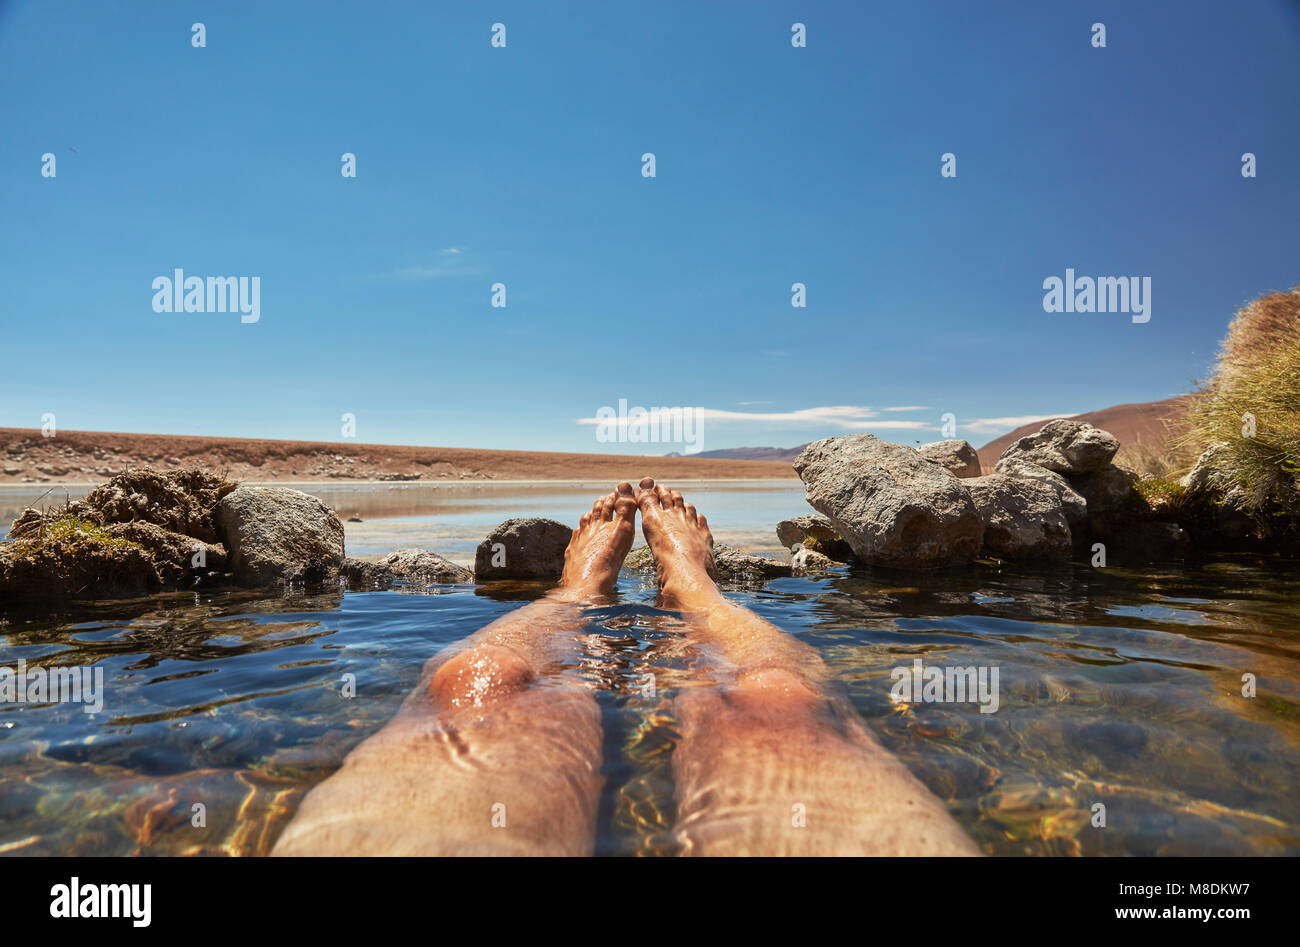 Uomo relax nella piscina con acqua bassa, sezione, Salar de Chiguana, Chiguana, Potosi, Bolivia, Sud America Foto Stock